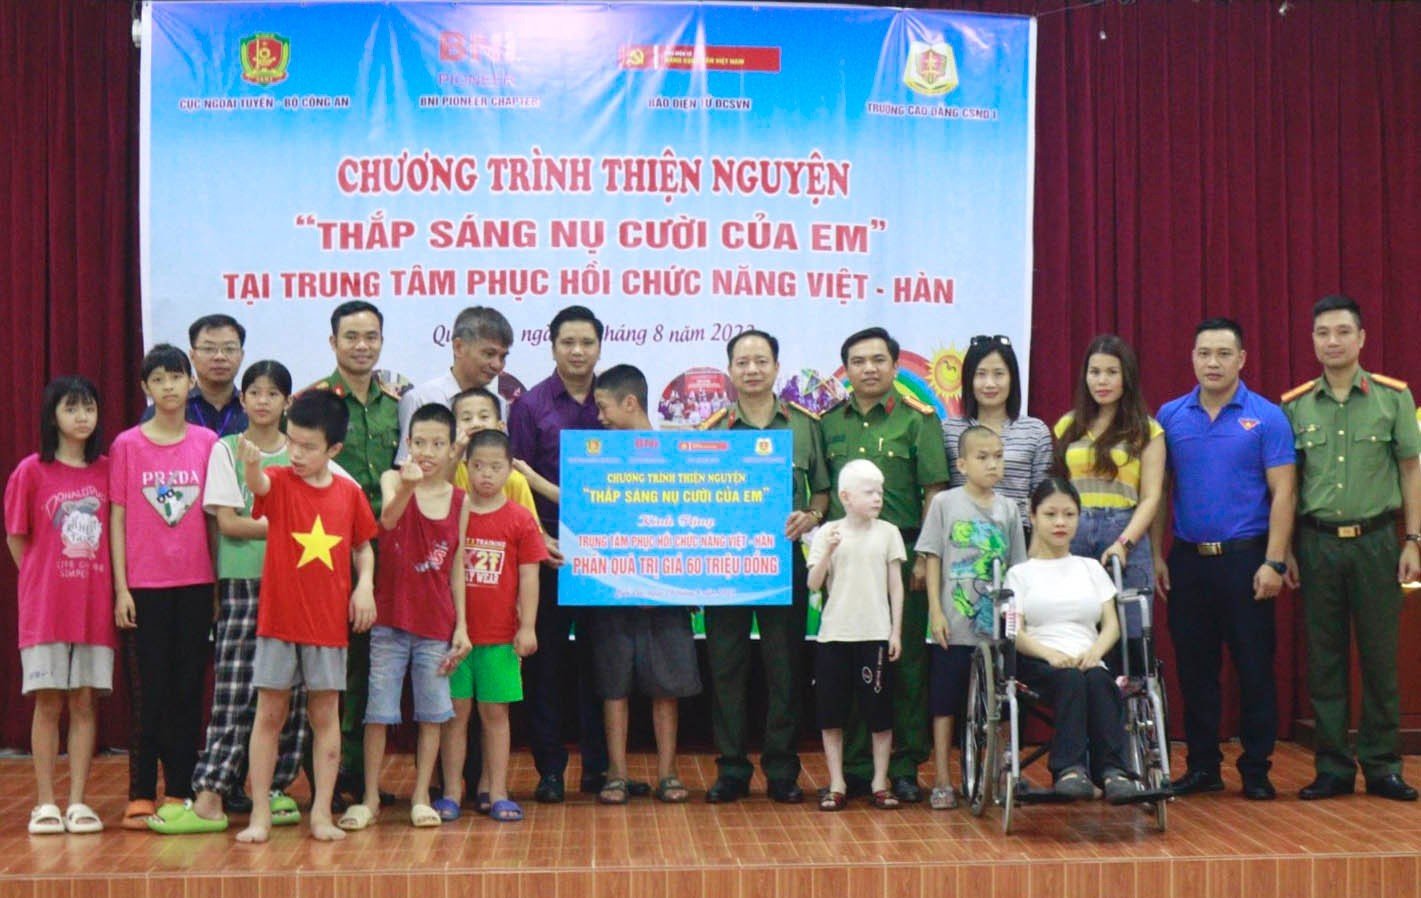 Đoàn Thanh niên các đơn vị cùng với BNI Chapter Pioneer gửi tặng cho Trung tâm Phục hồi chức năng Việt – Hàn nhiều phần quà với tổng trị giá là 60 triệu đồng